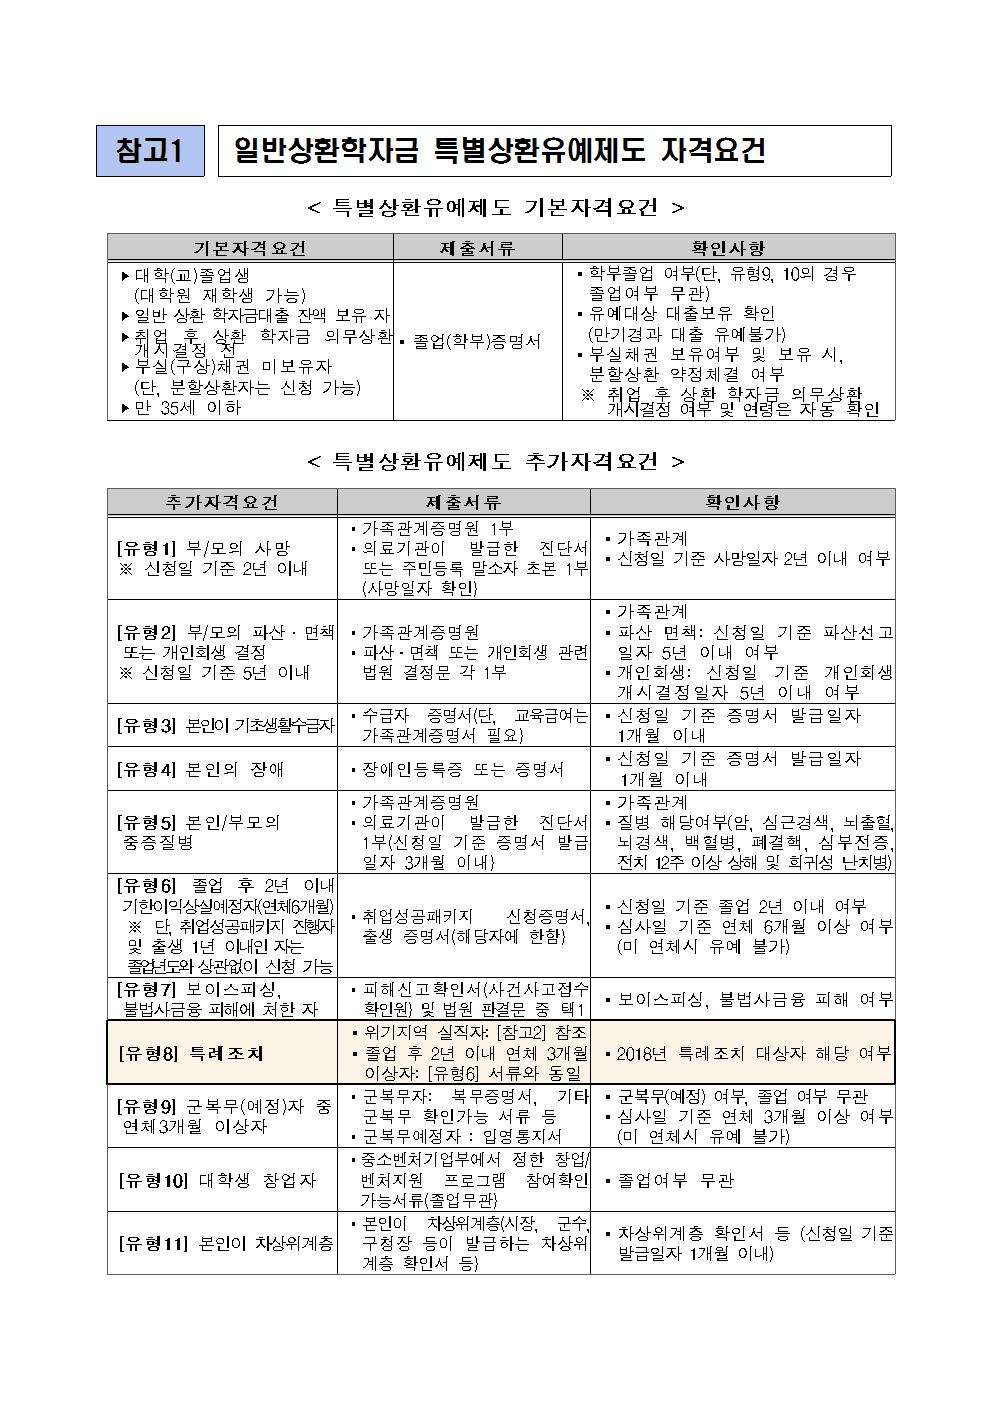 08-30(목)[보도자료] 한국장학재단, 2018년 일반상환학자금 특별상환유예 특례조치 시행003.jpg